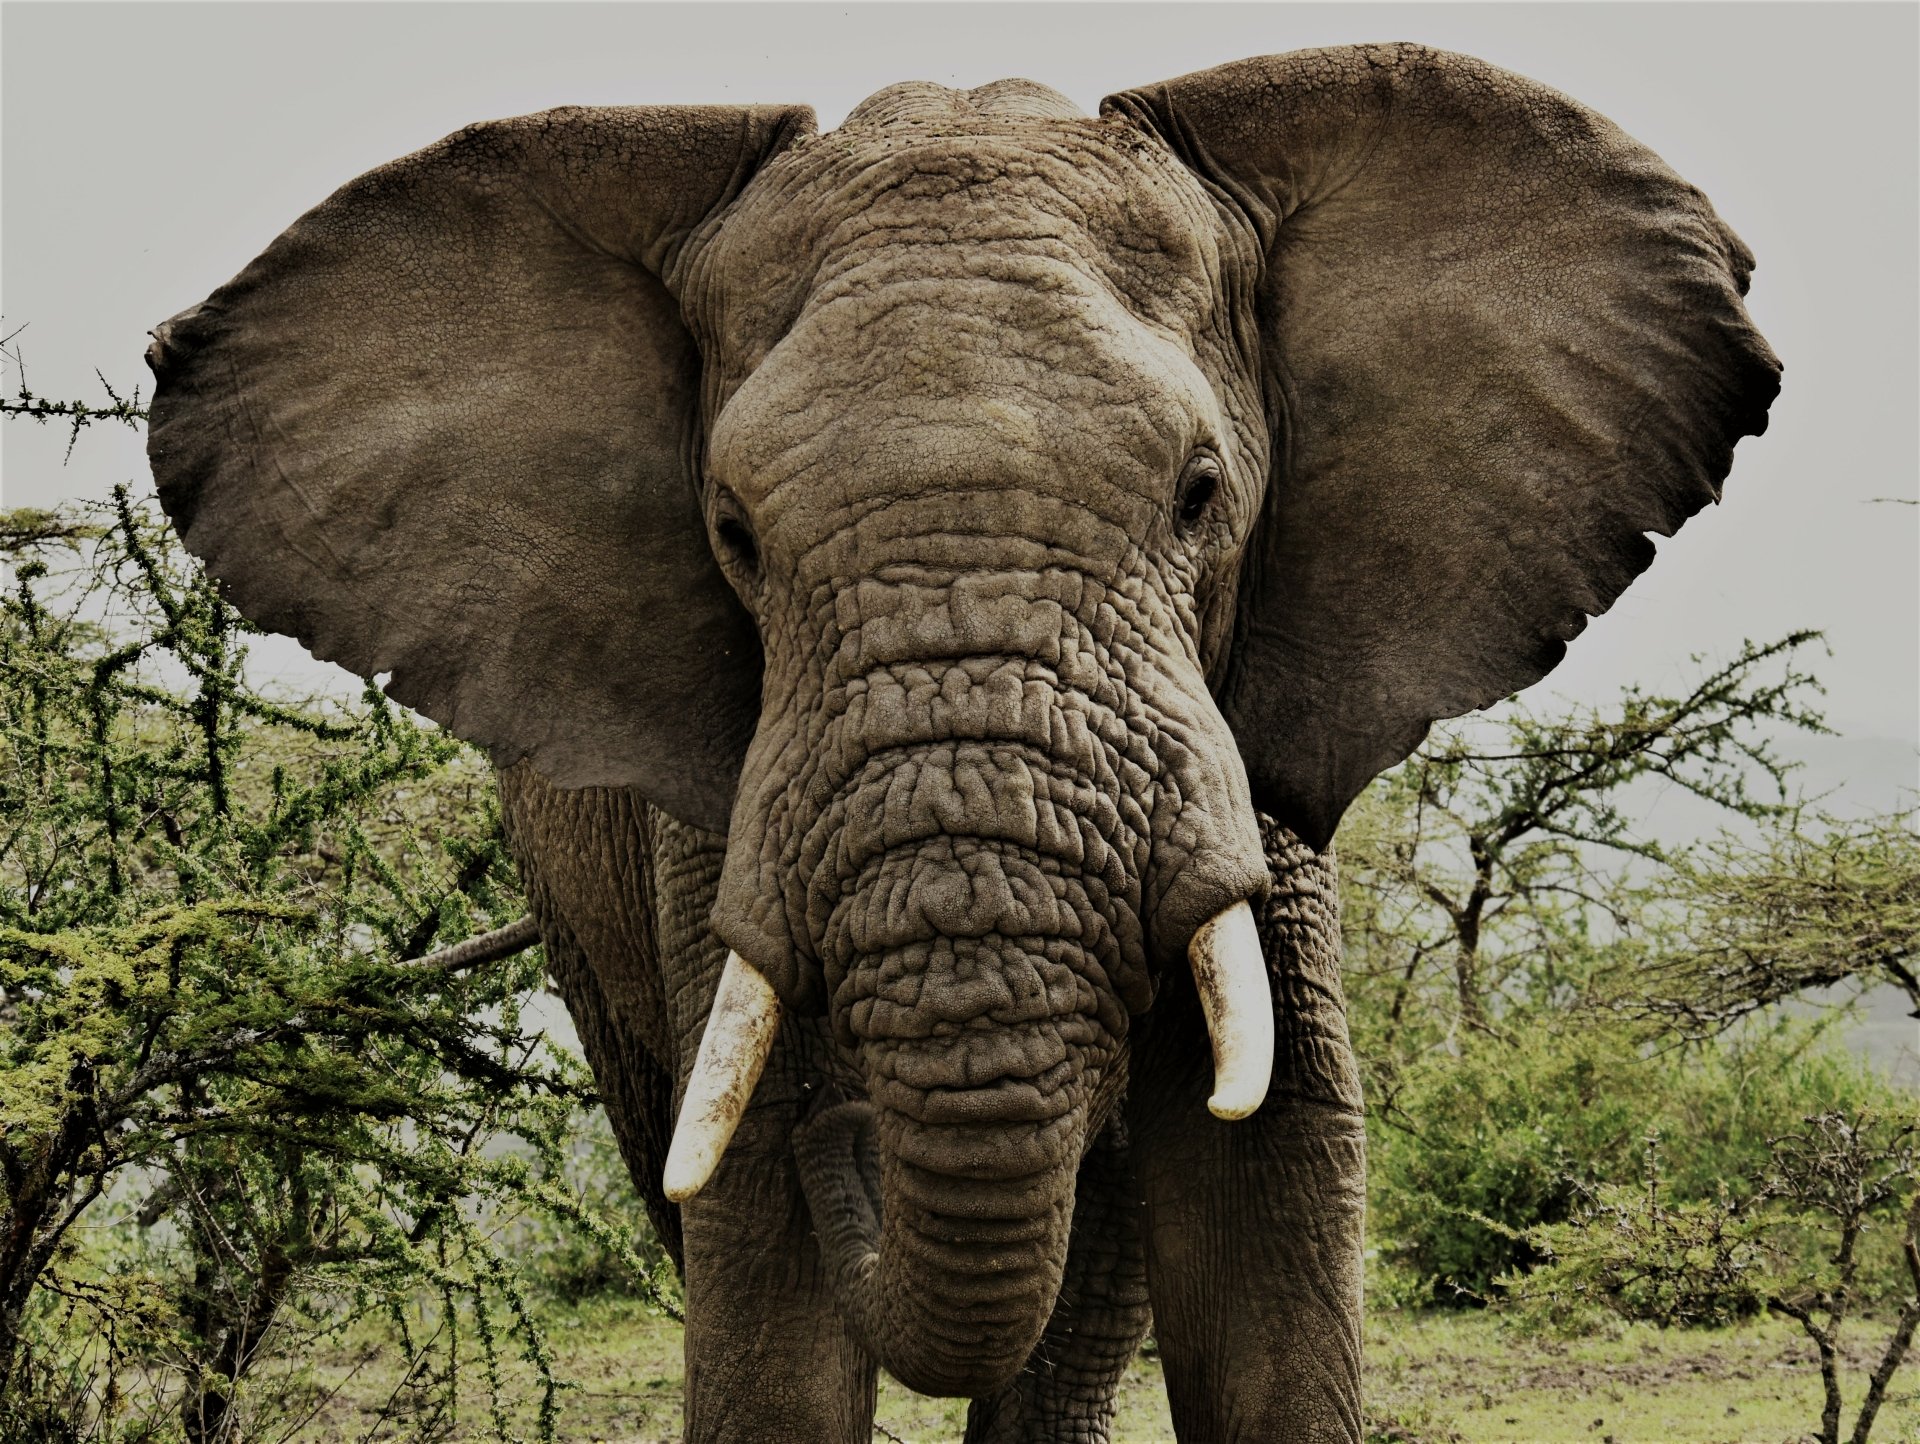 Angry Elephant Bull - Tanzania by caty420